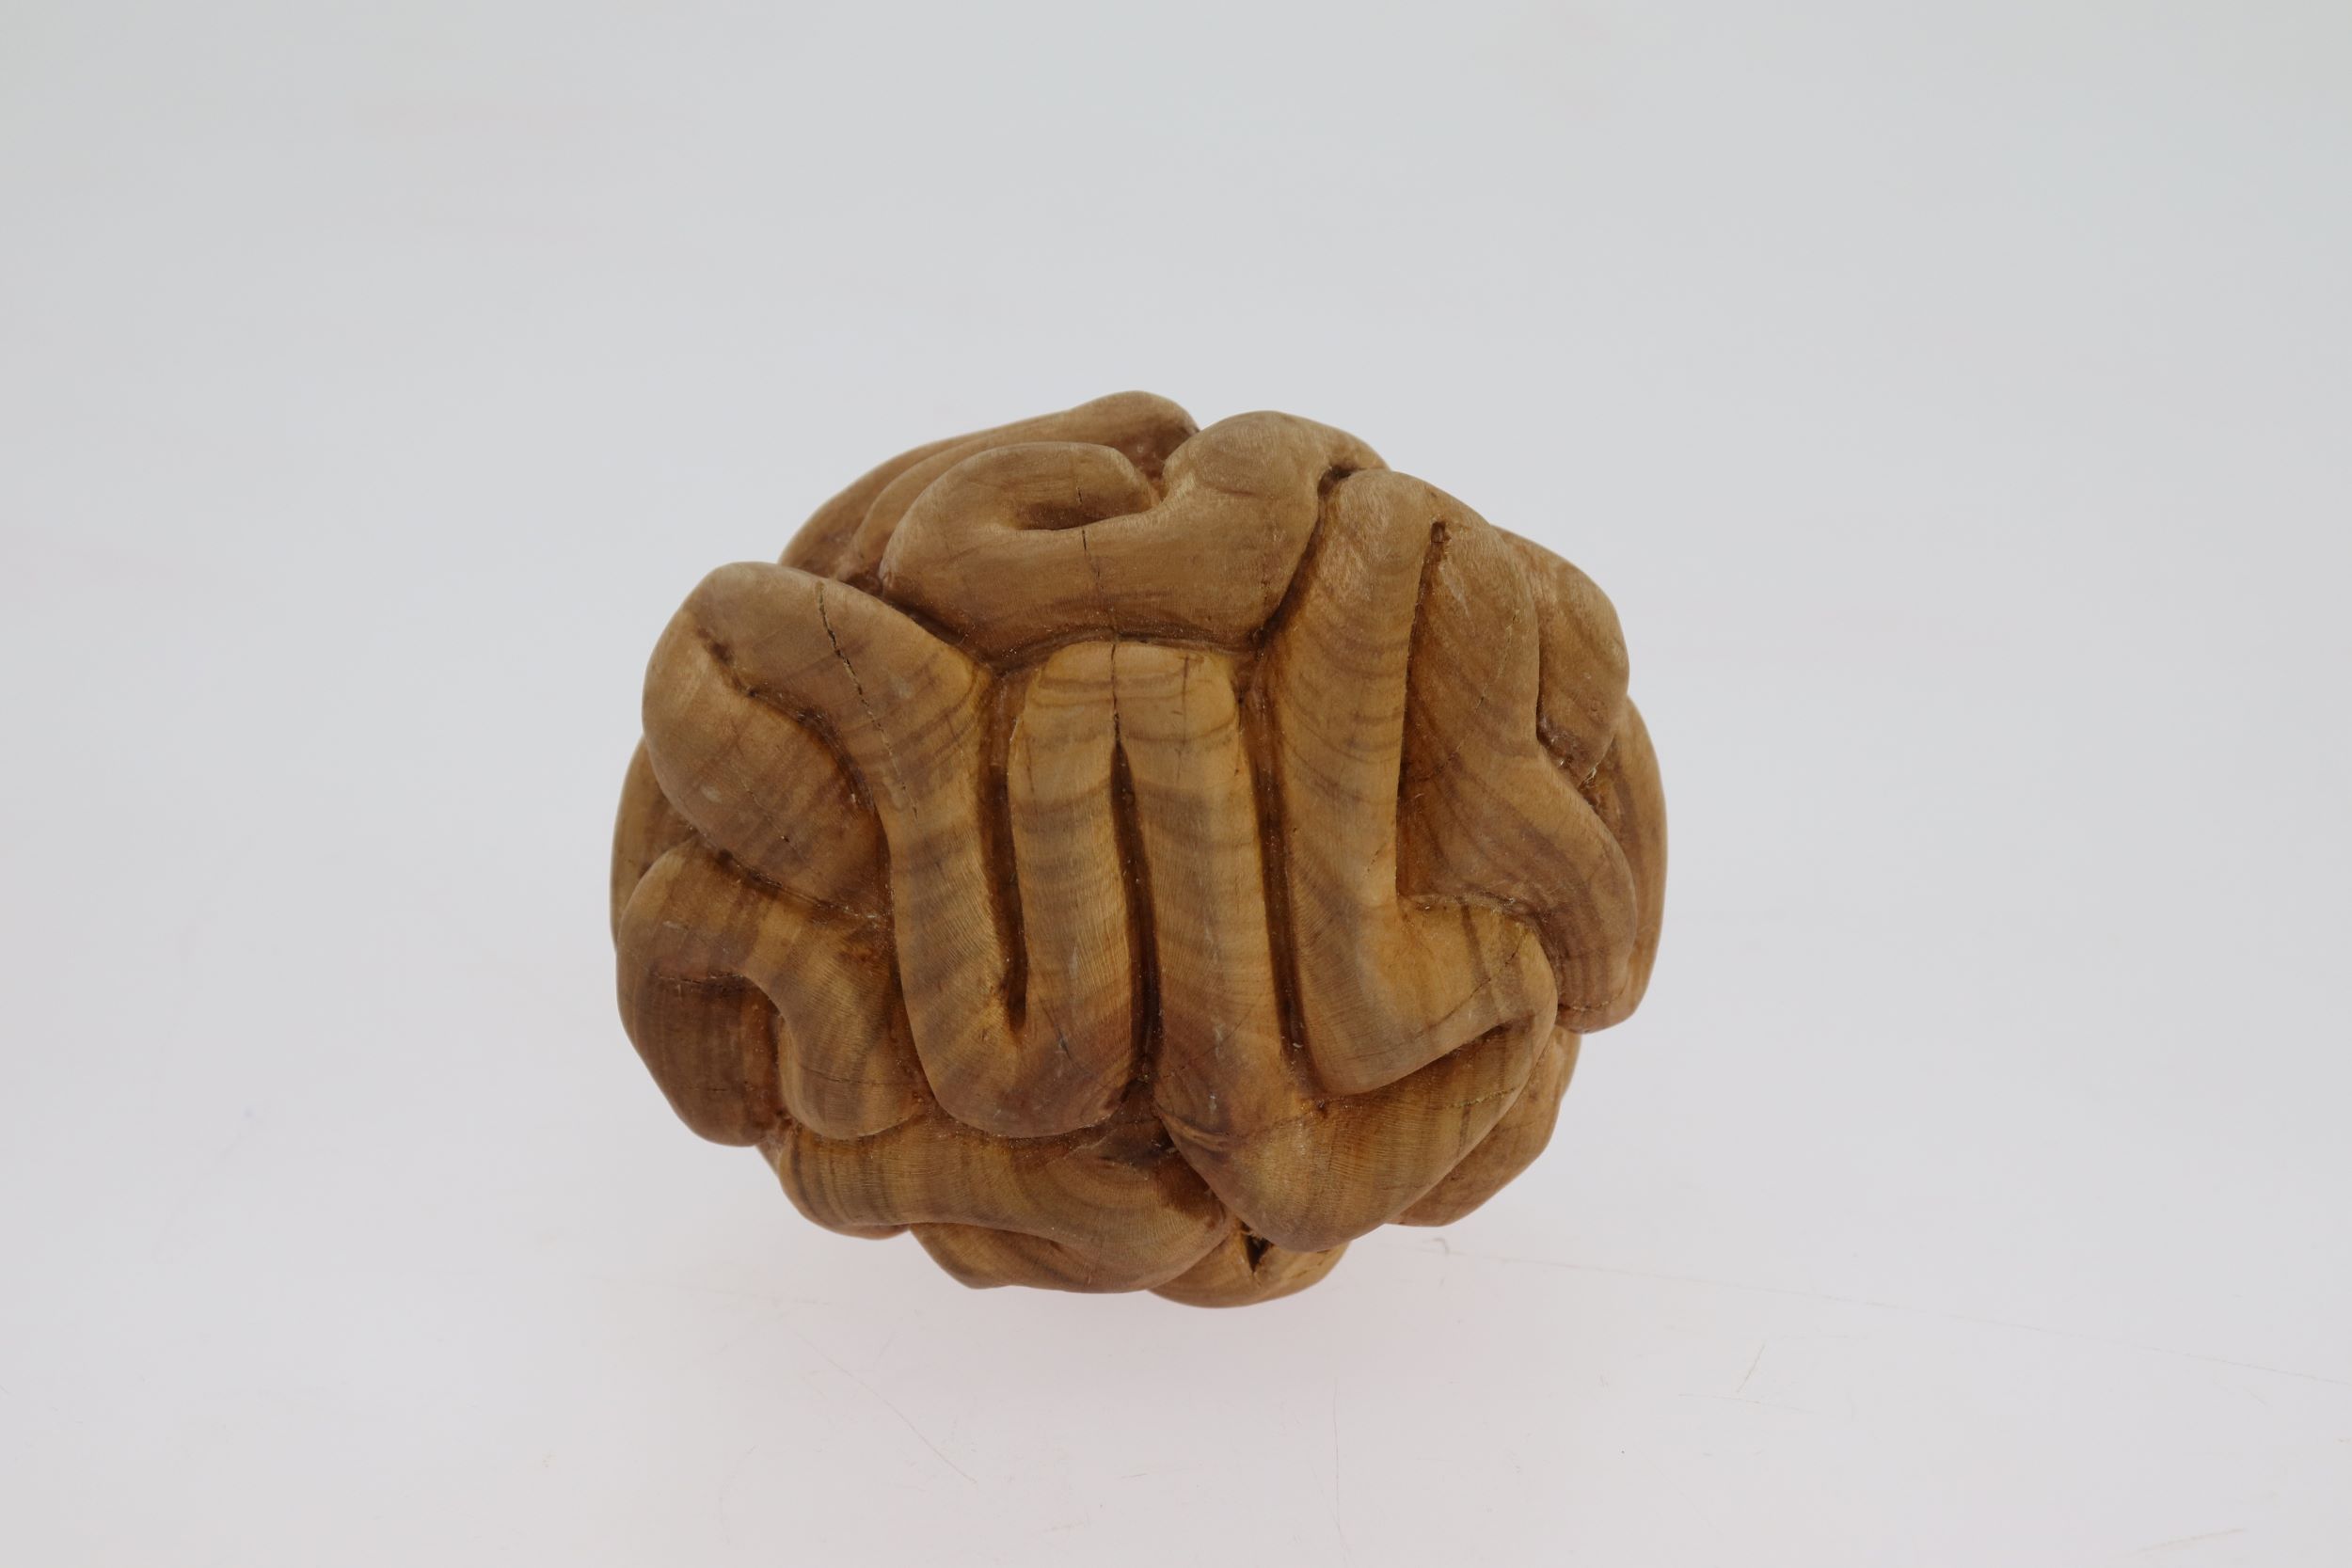 a carved woodne sculpture resembling a brain